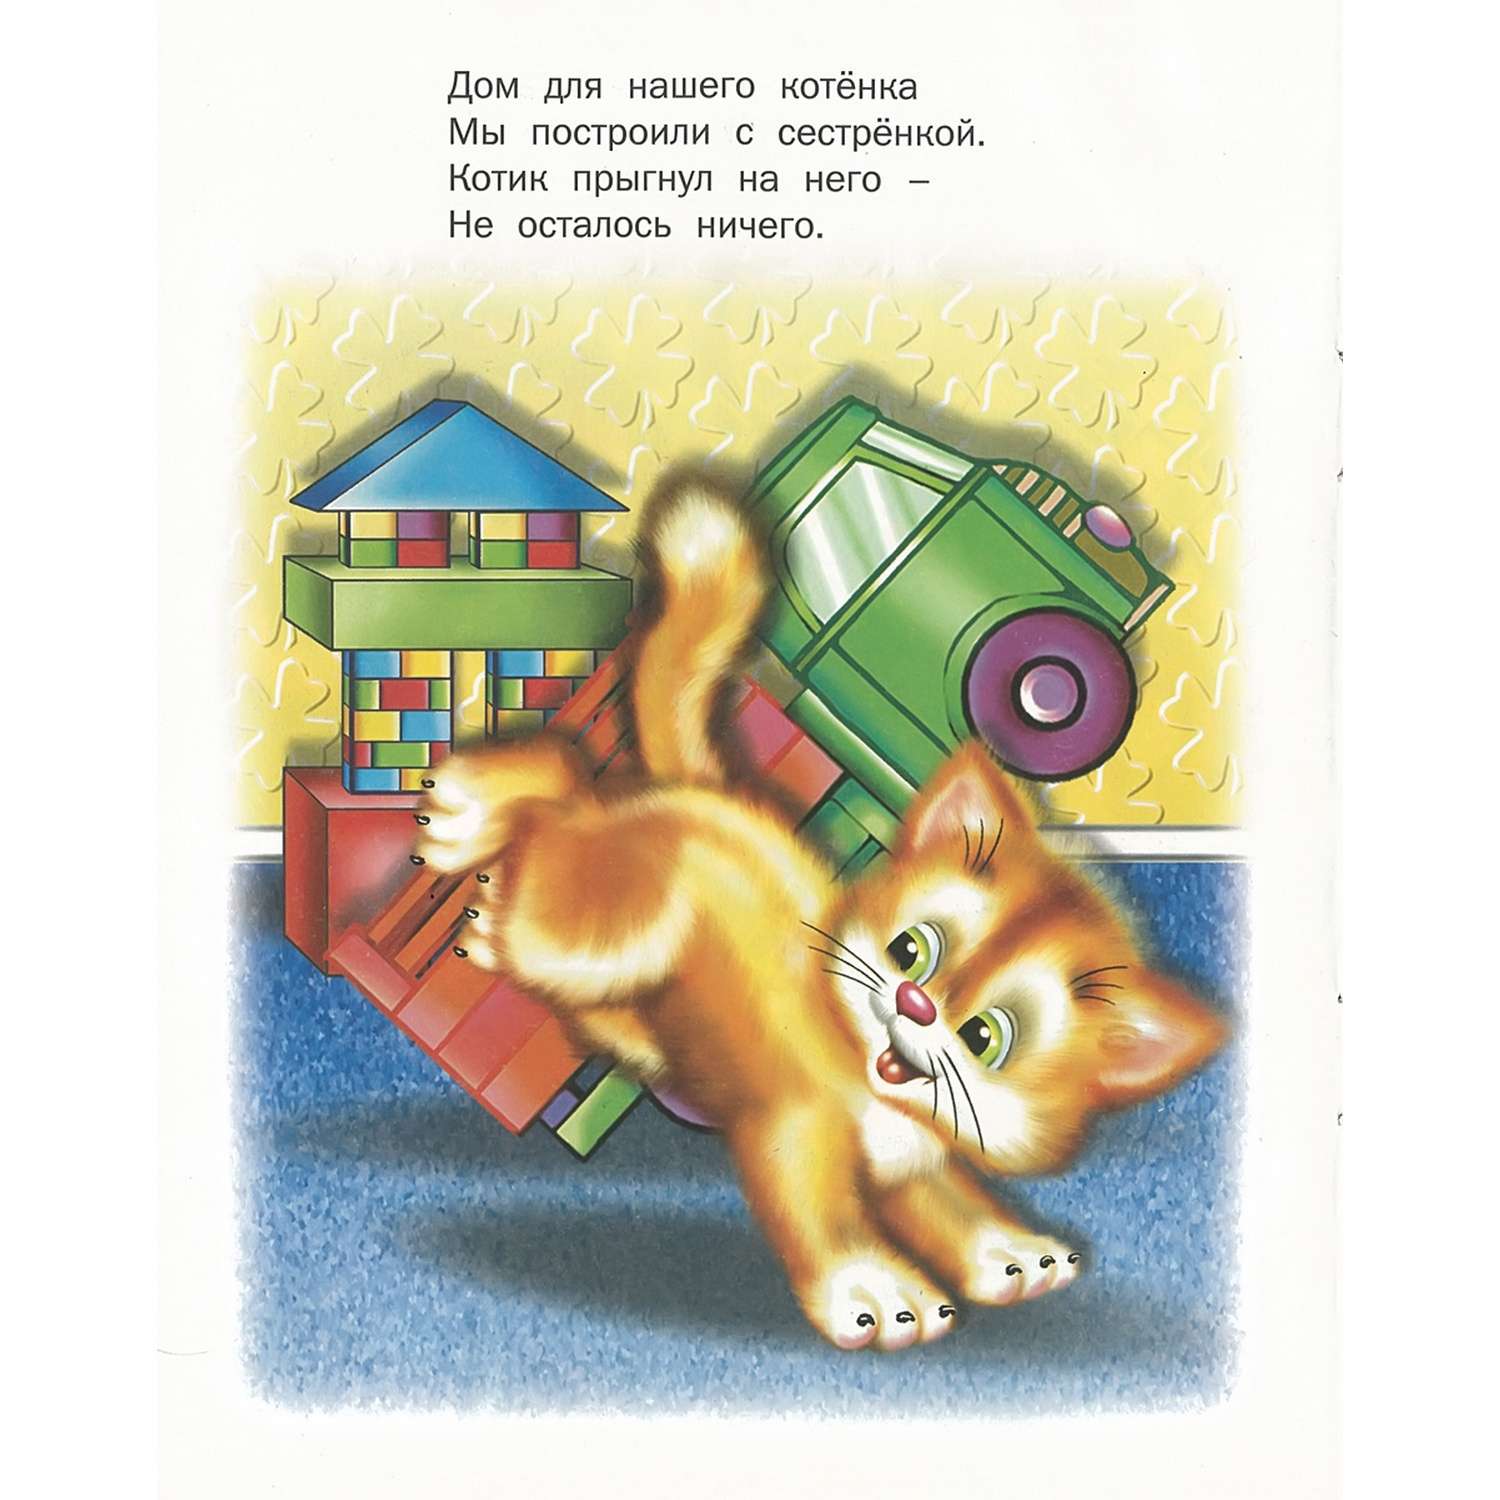 Книга Русич Поиграй-ка. Сборник стихов для детей - фото 3